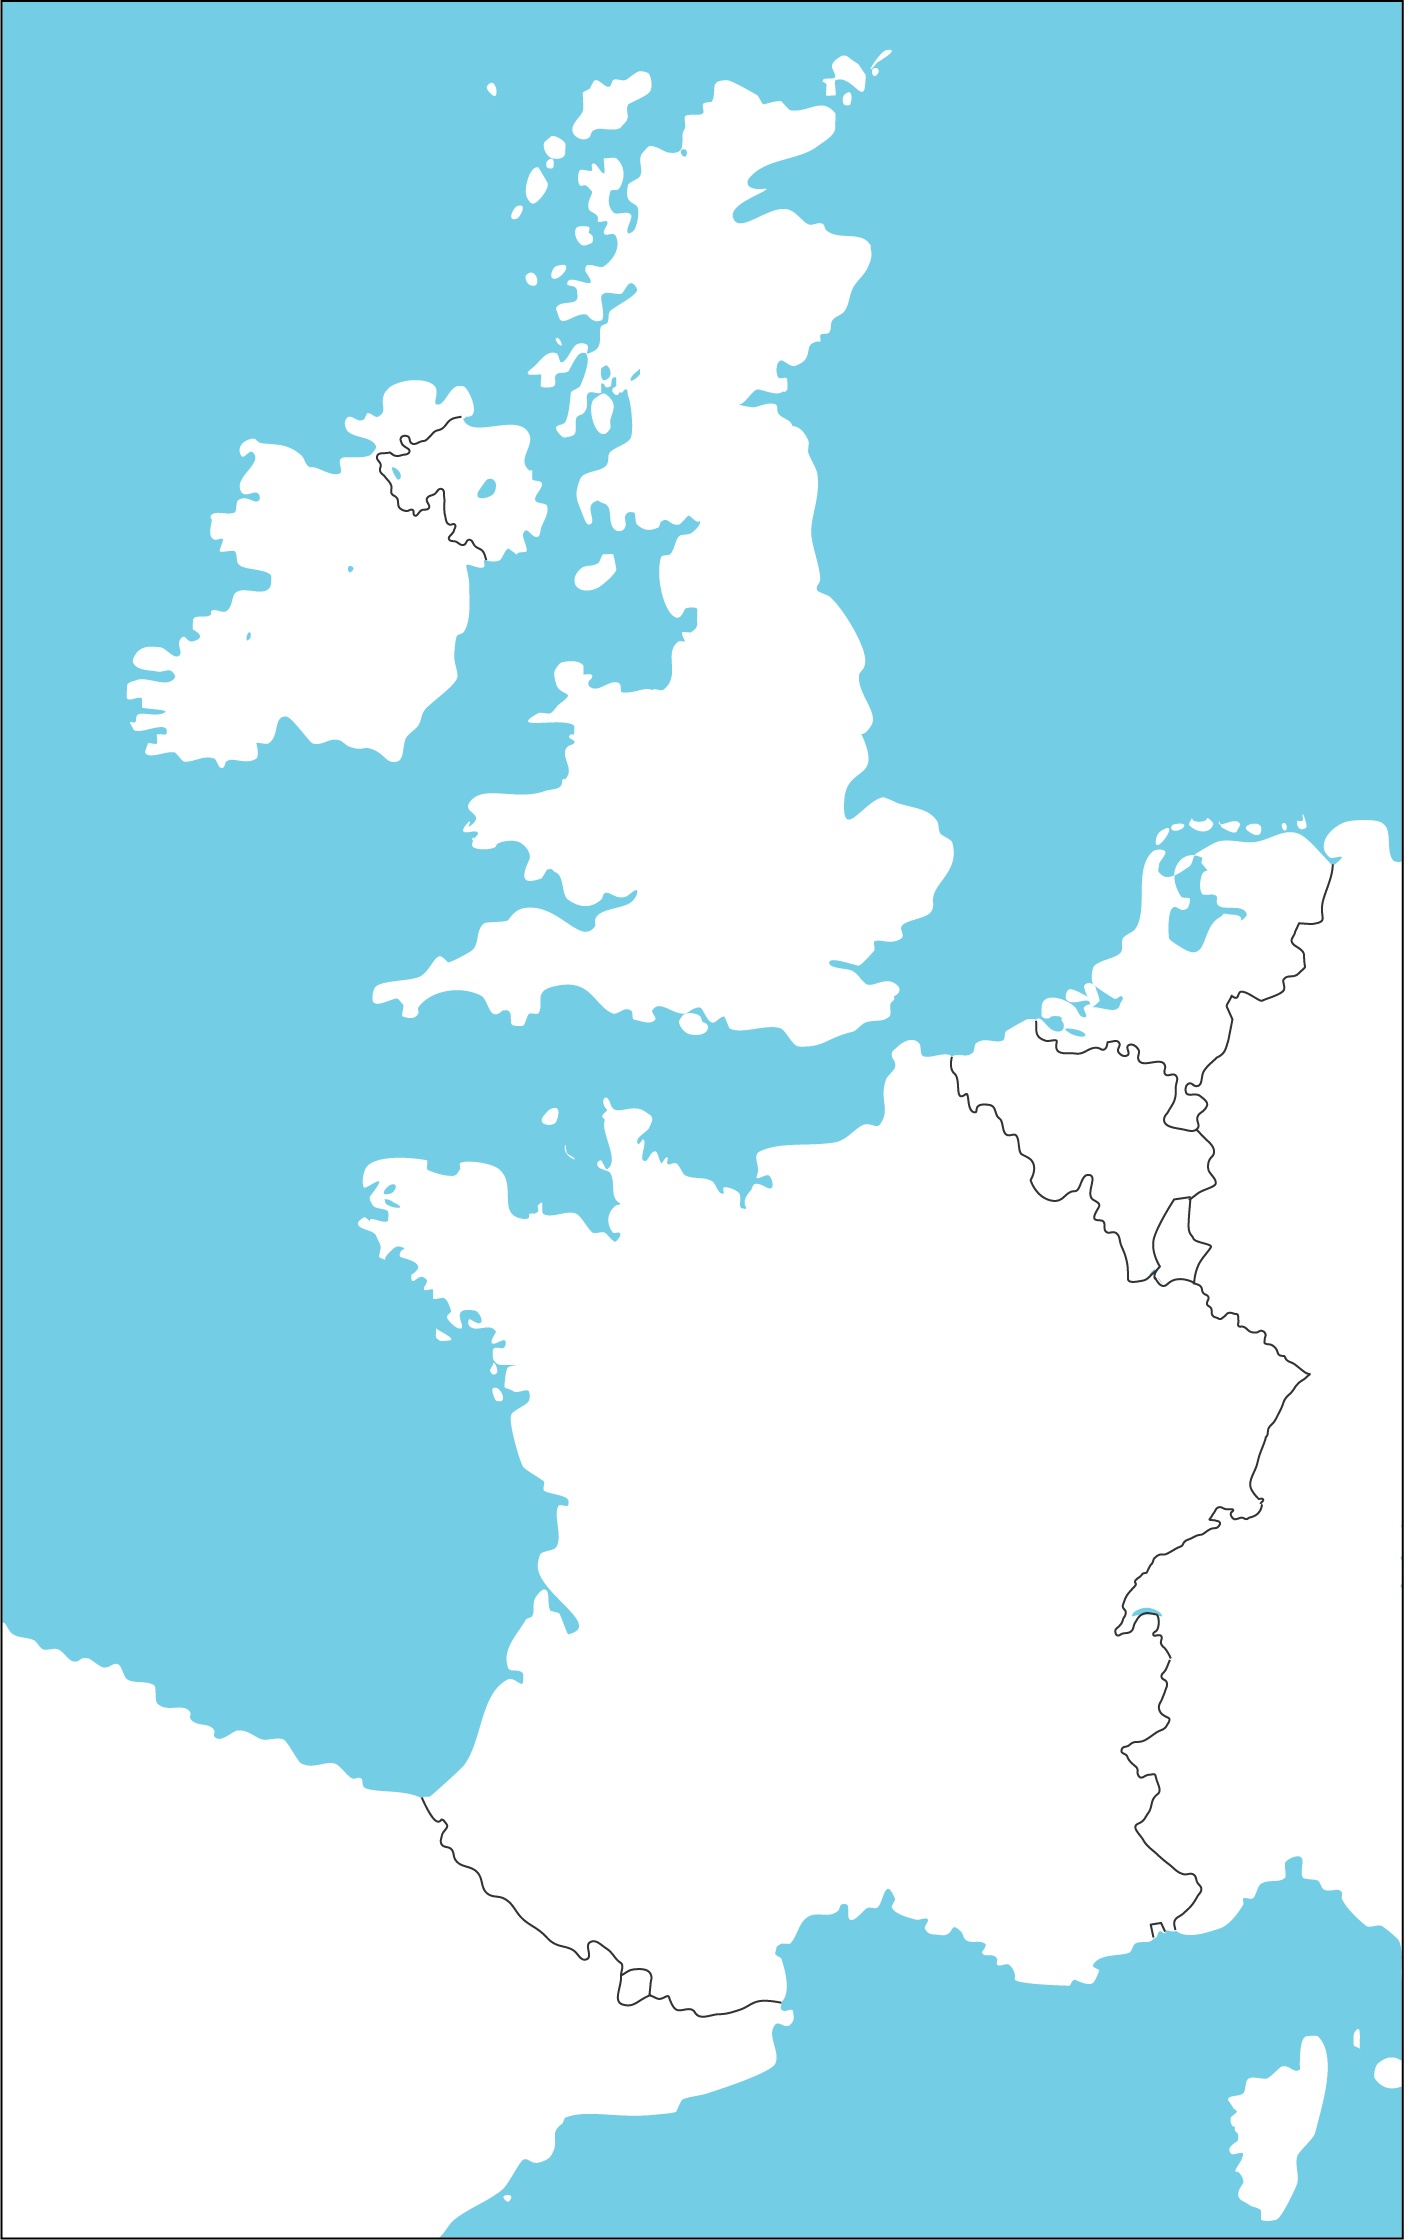 sjeverna europa slijepa karta Osnovna škola Josipa Zorića Dugo Selo   Geografija sjeverna europa slijepa karta